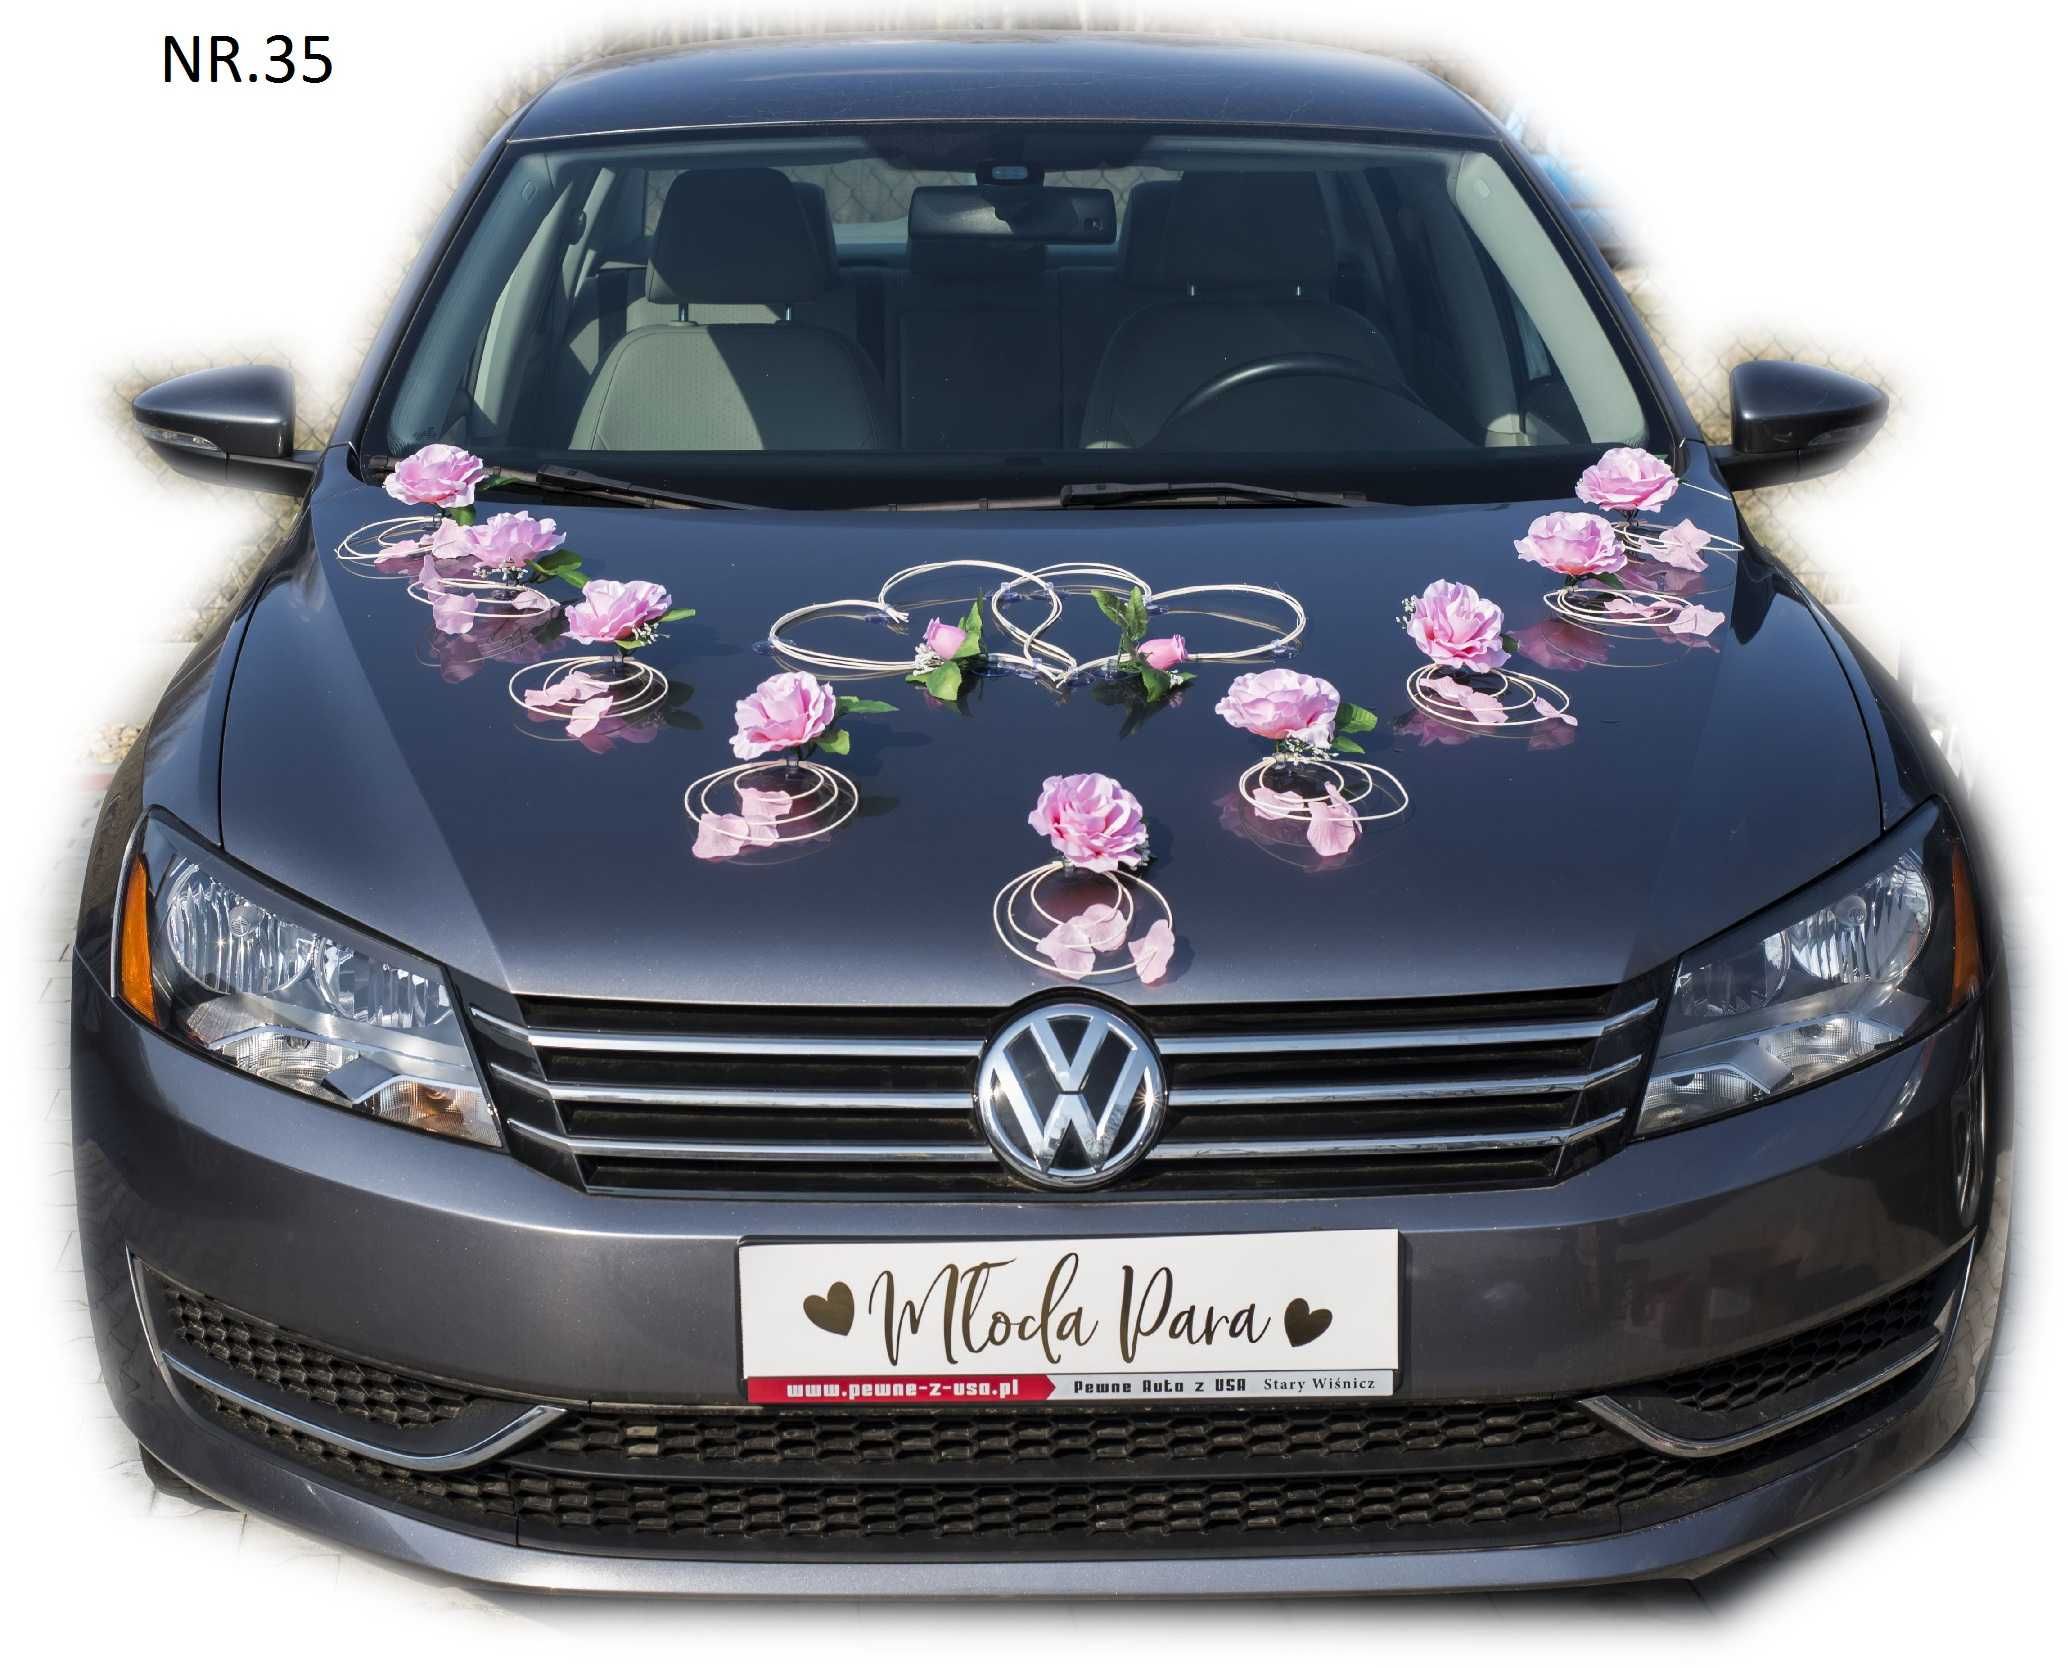 SUPER dekoracja samochodu ozdoba na auto do ślubu Nr. 035